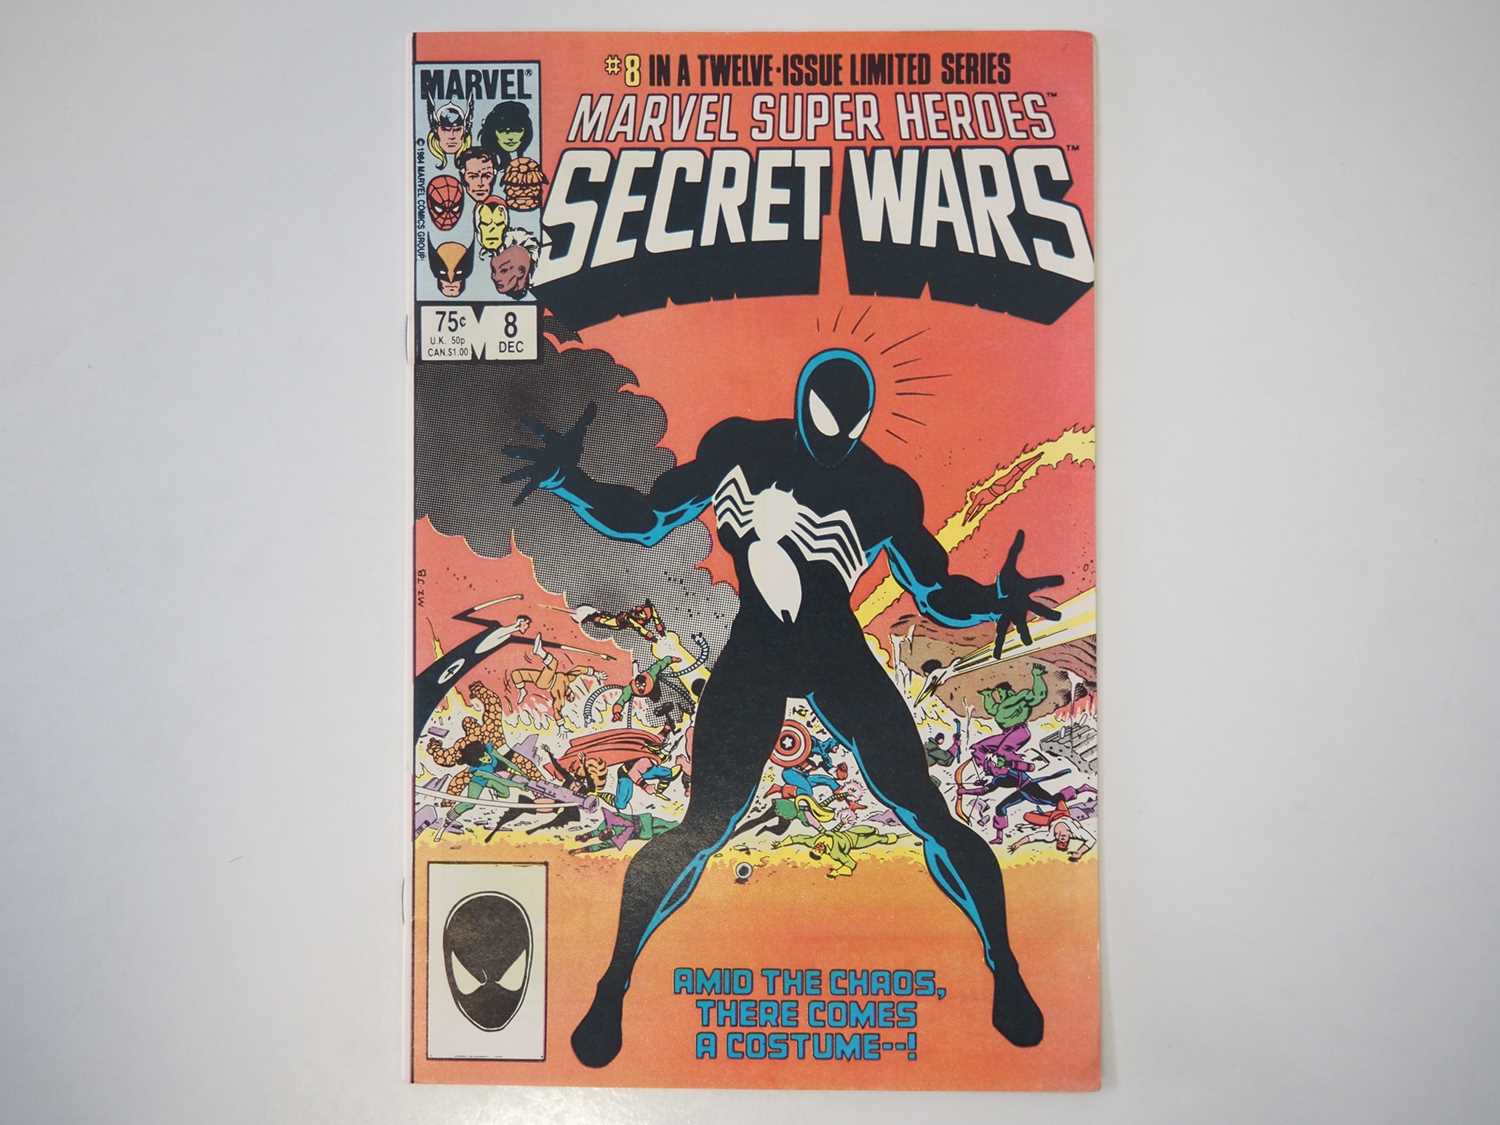 MARVEL SUPER HEROES SECRET WARS #1, 2, 3, 4, 5, 6, 7, 8, 9, 10, 11, 12 - (12 in Lot) - (1983/84 - - Image 3 of 3